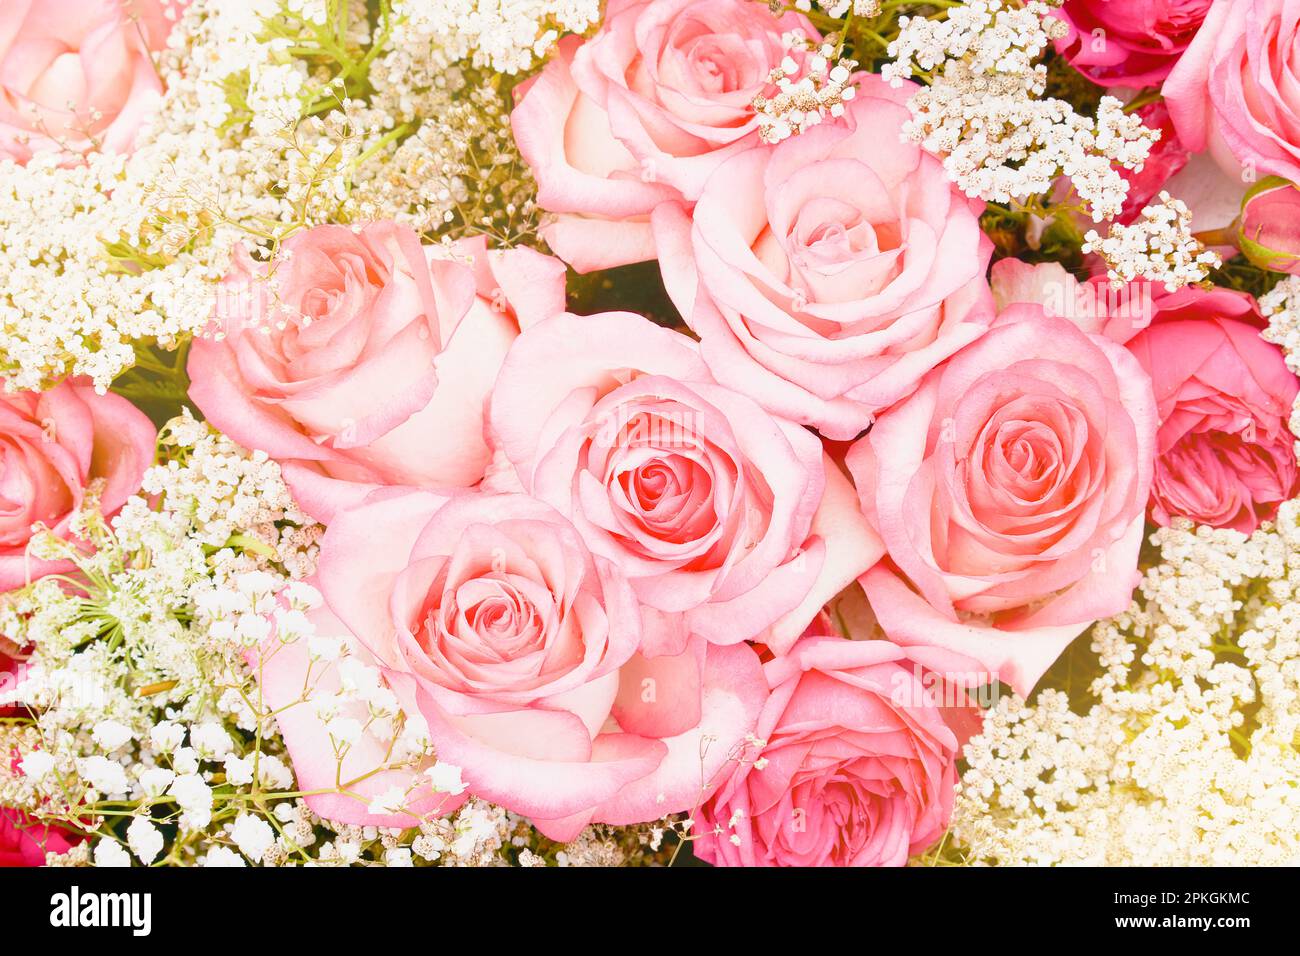 Bouquet de roses roses. Arrière-plan des fleurs. Vue de dessus, mise au point douce Banque D'Images